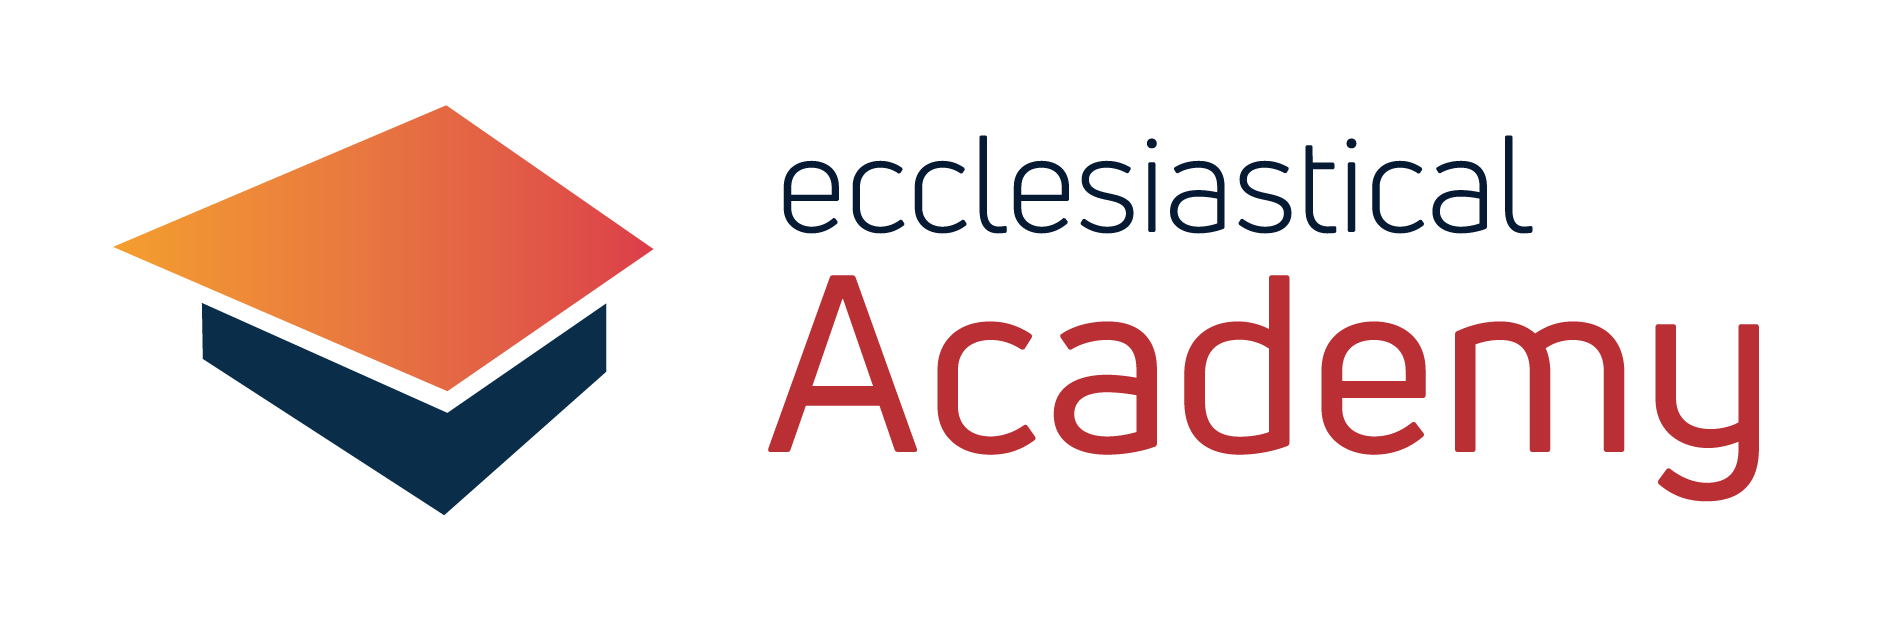 Ecclesiastical Academy logo